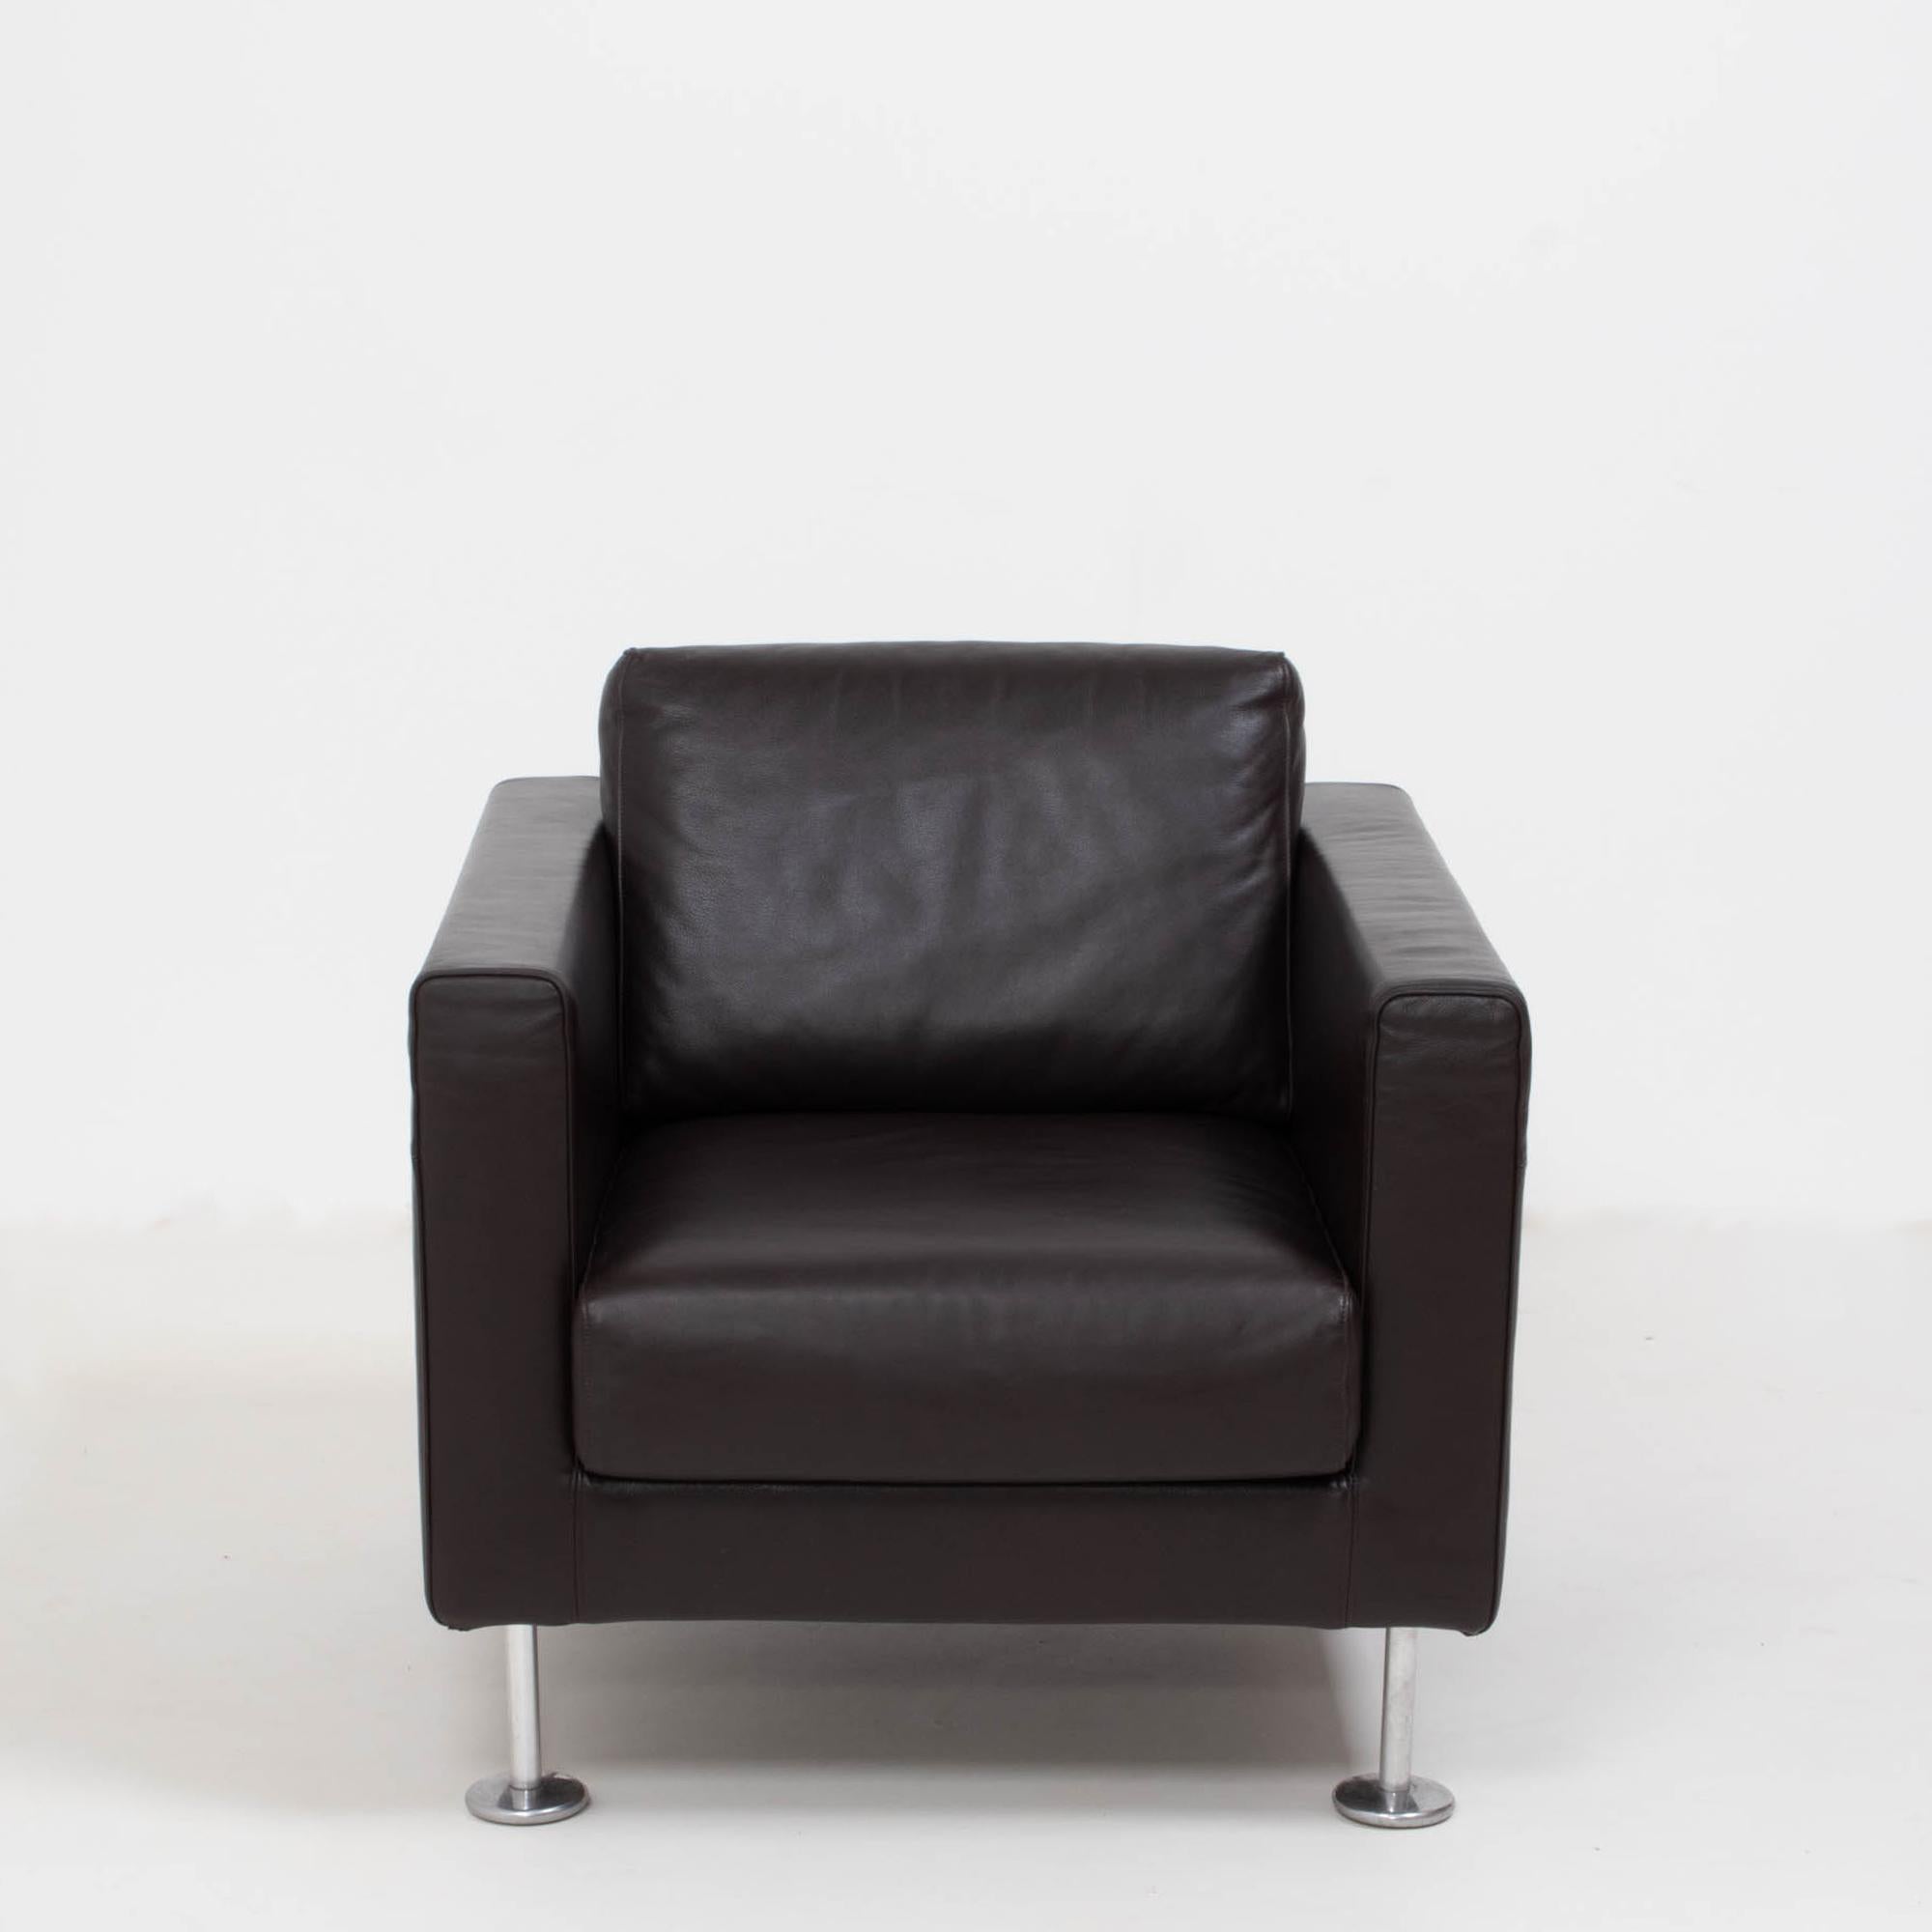 Der 2004 von Jasper Morrison für Vitra entworfene Park Sessel hat eine schlichte und moderne Ästhetik.

Die Stühle haben eine kubische Silhouette, mit einem Massivholzrahmen und stehen auf vier polierten Aluminiumbeinen. Der Stuhl ist mit braunem